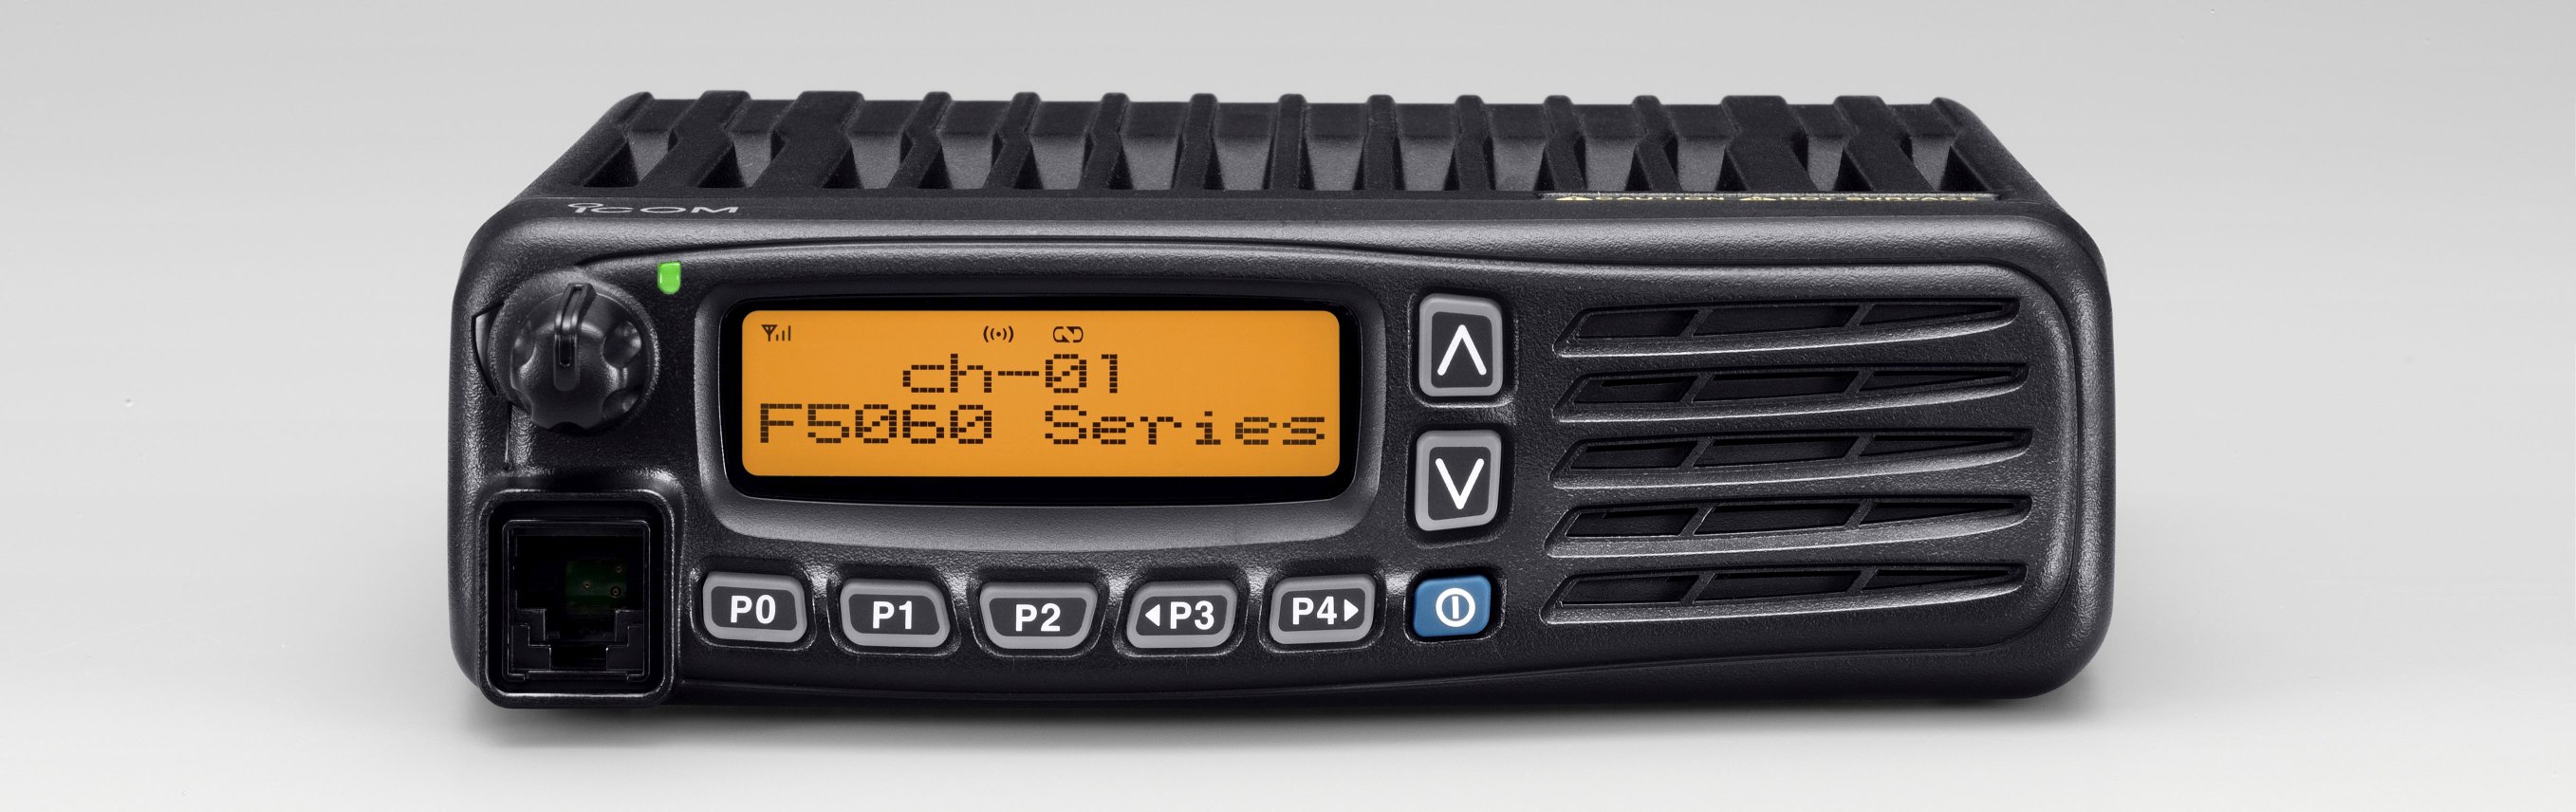 ICOM IC-F5062 i IC-F6062 To radiotelefony profesjonalne z pasmem VH lub UHF i odłączanym panelem (wymaga opcjonalnego dodatku)